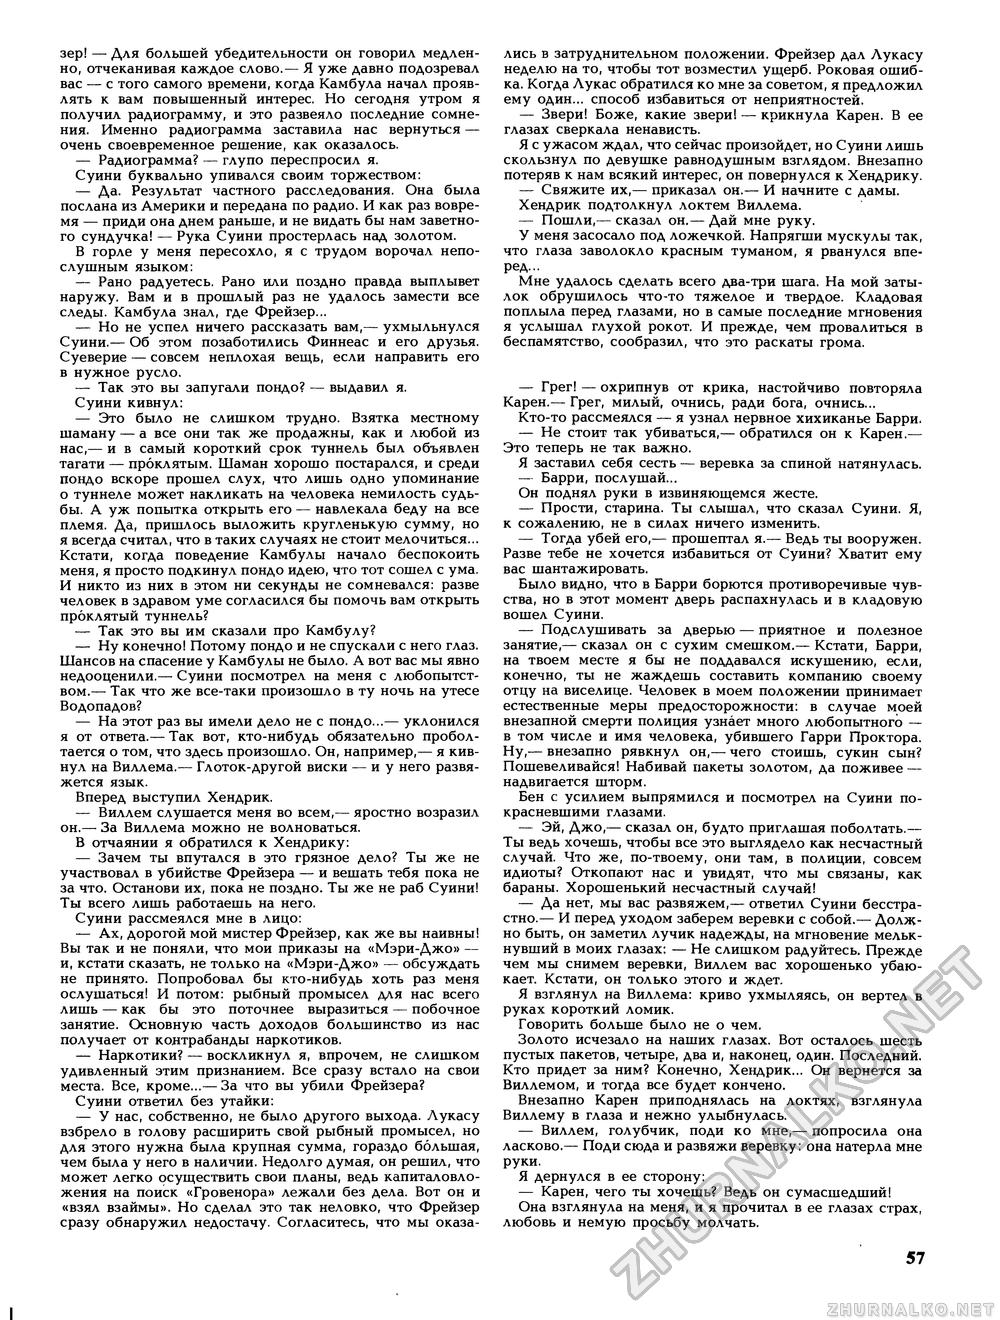 Вокруг света 1989-08, страница 59